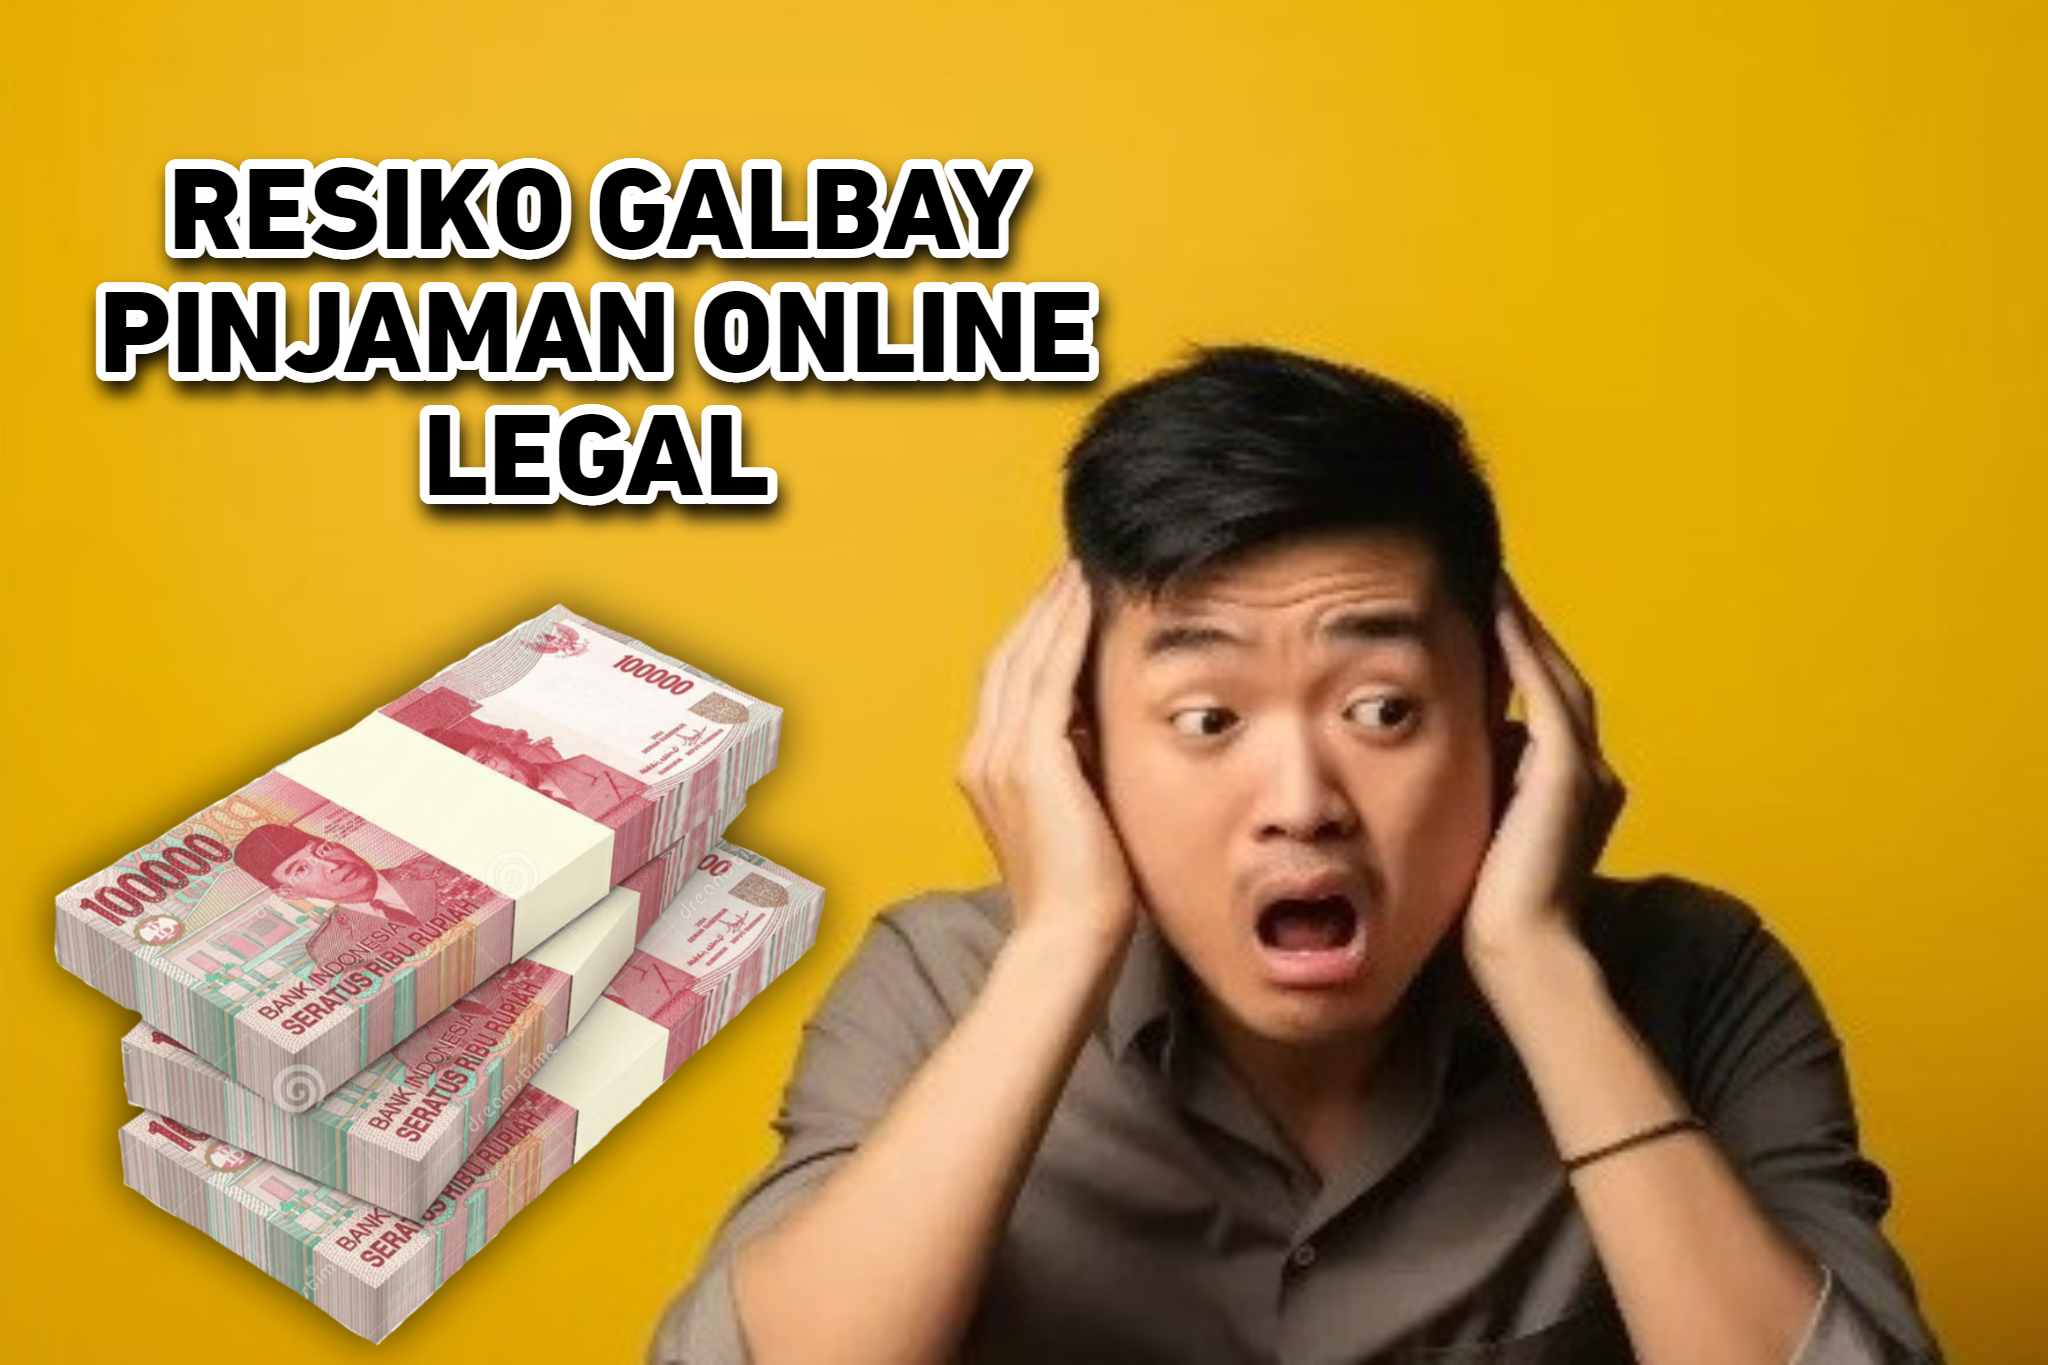 Resiko Serius yang Akan Dialami Apabila Galbay di Pinjaman Online Legal